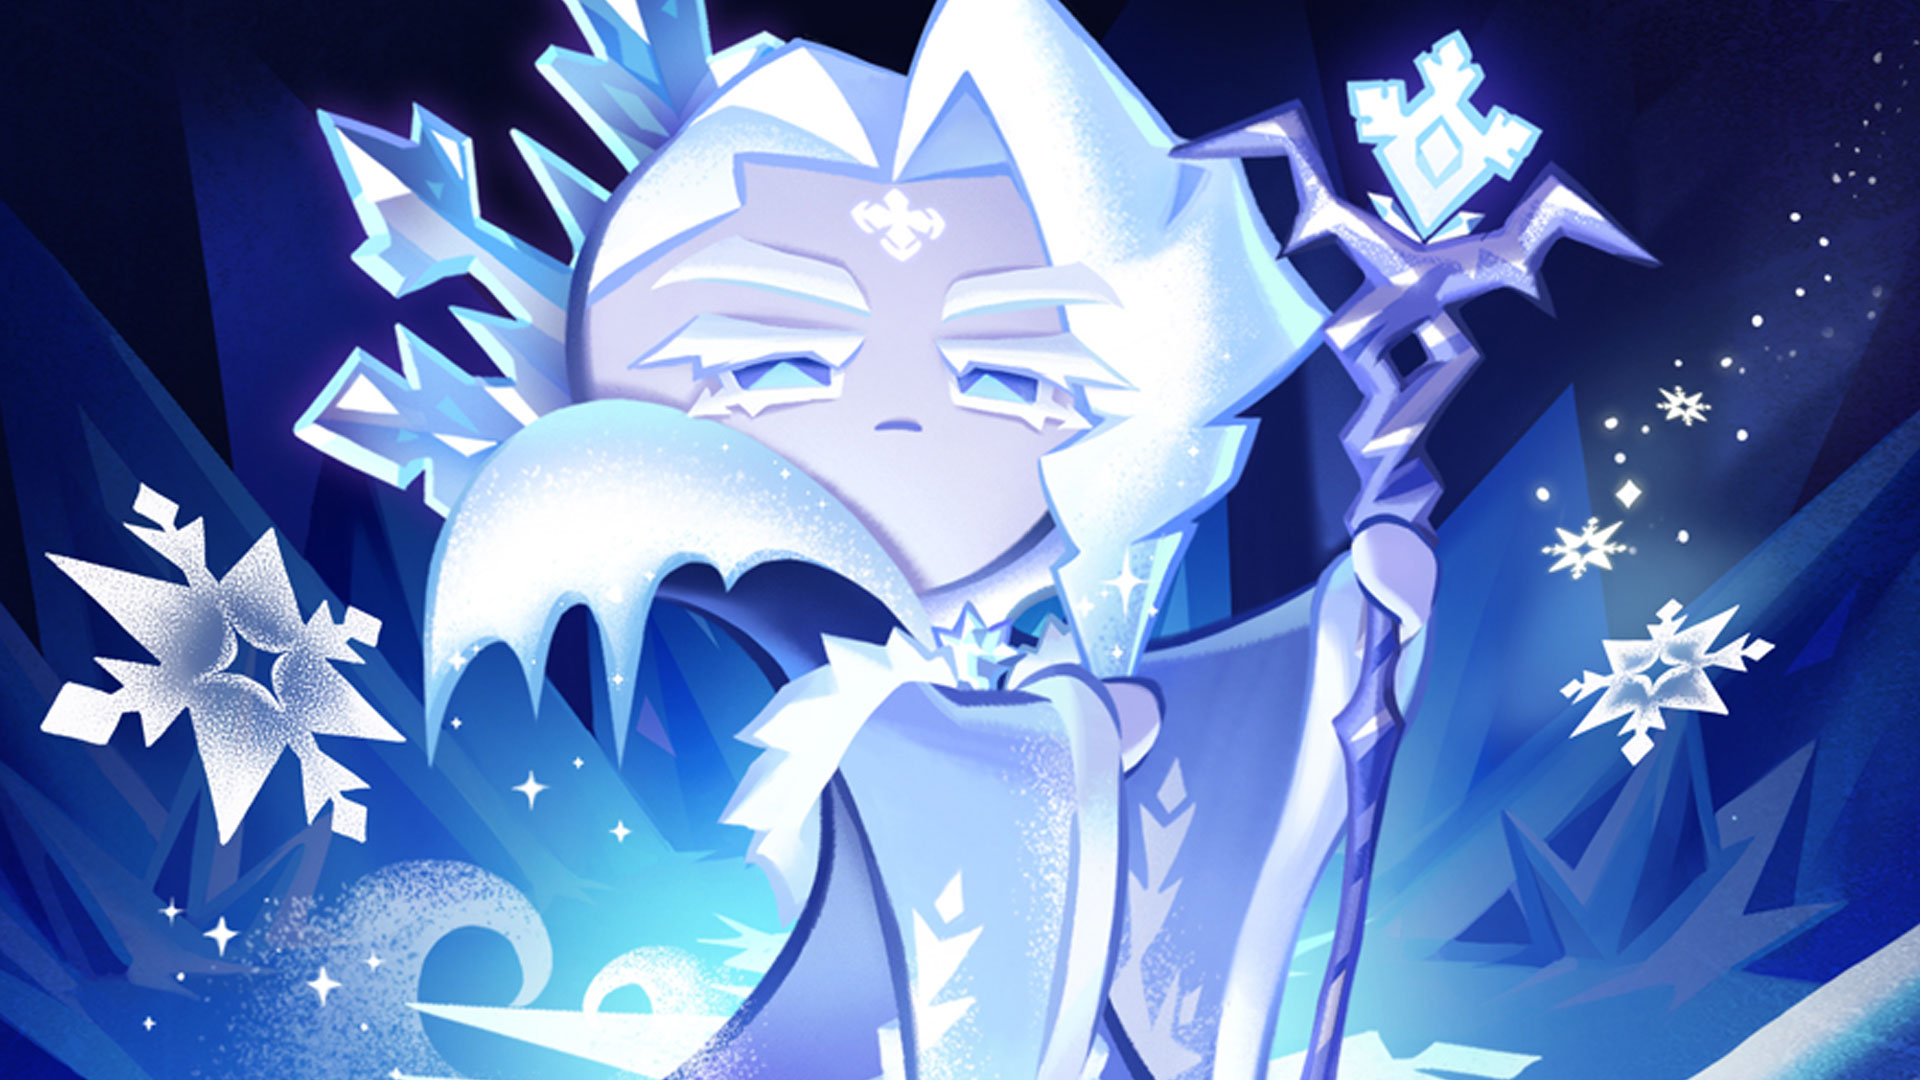 Frost queen cookie run kingdom